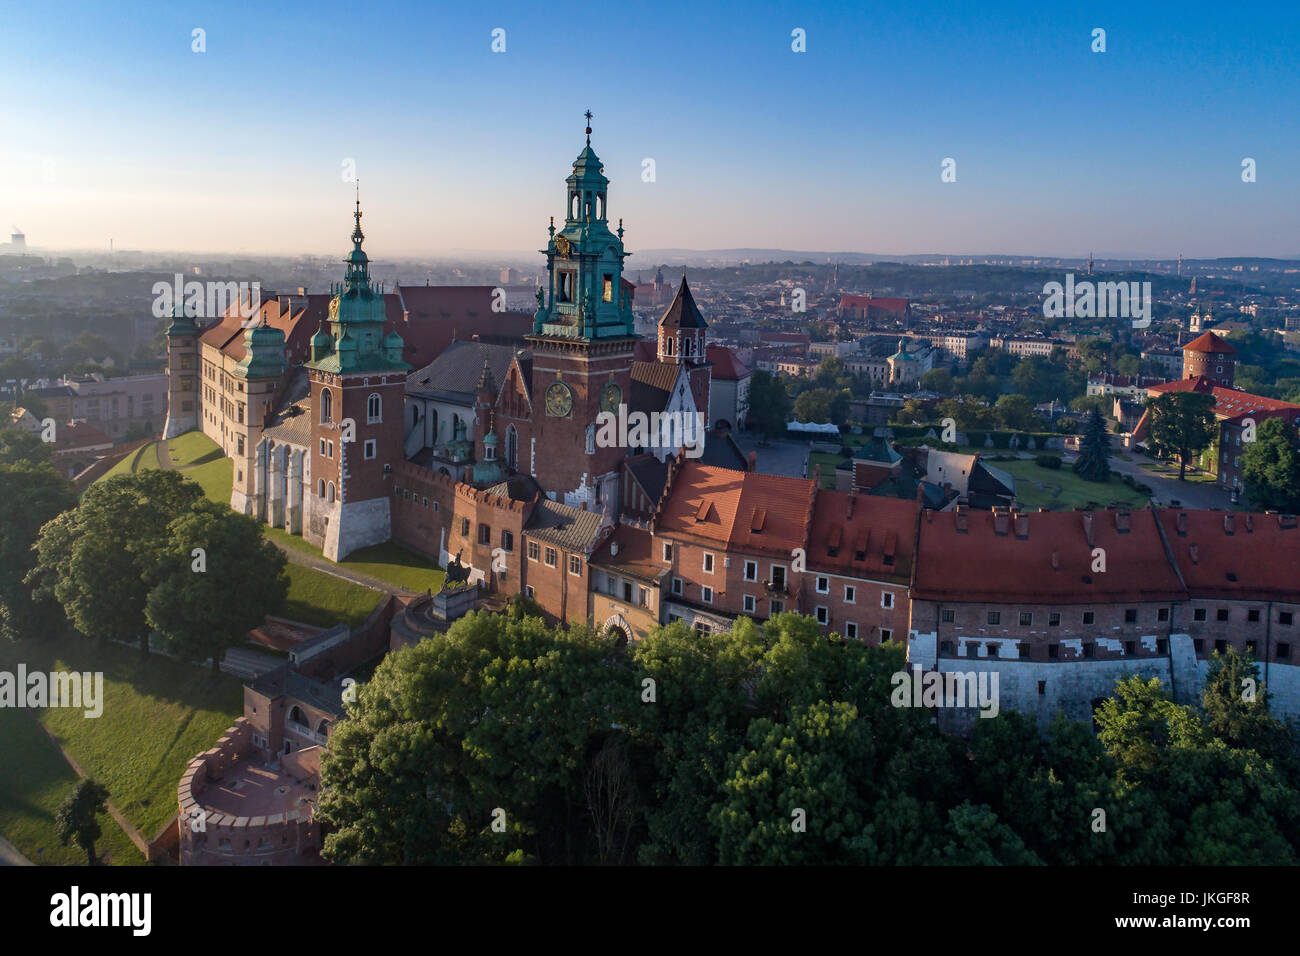 Historischen Wawel Königsschloss und die Kathedrale in Krakau, Polen-Luftbild bei Sonnenaufgang Licht Stockfoto